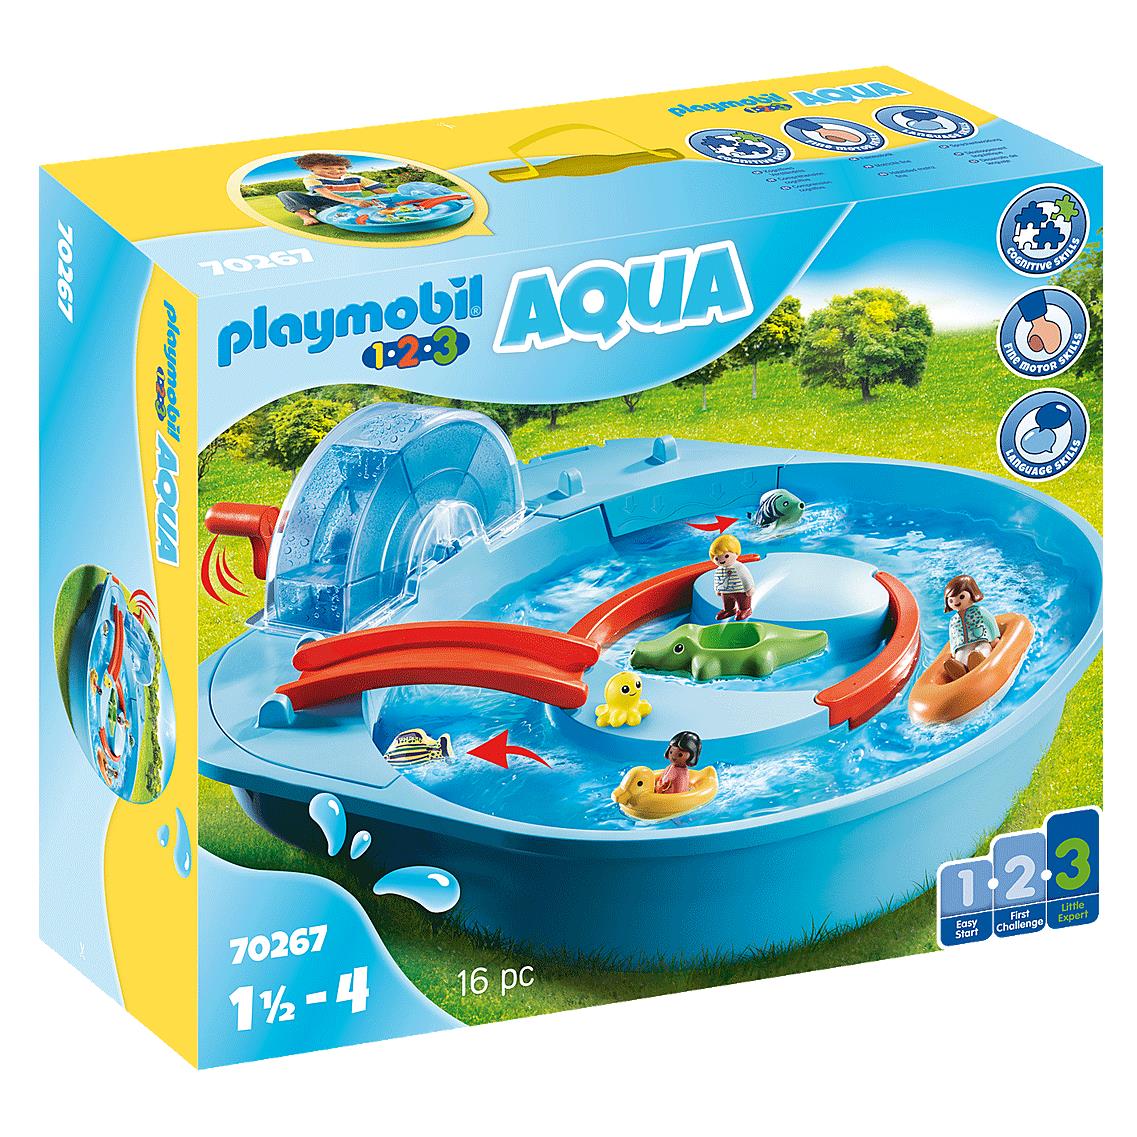 Playmobil Aqua Splish Splash Water Park Kids Play 70267 Same Day Ship